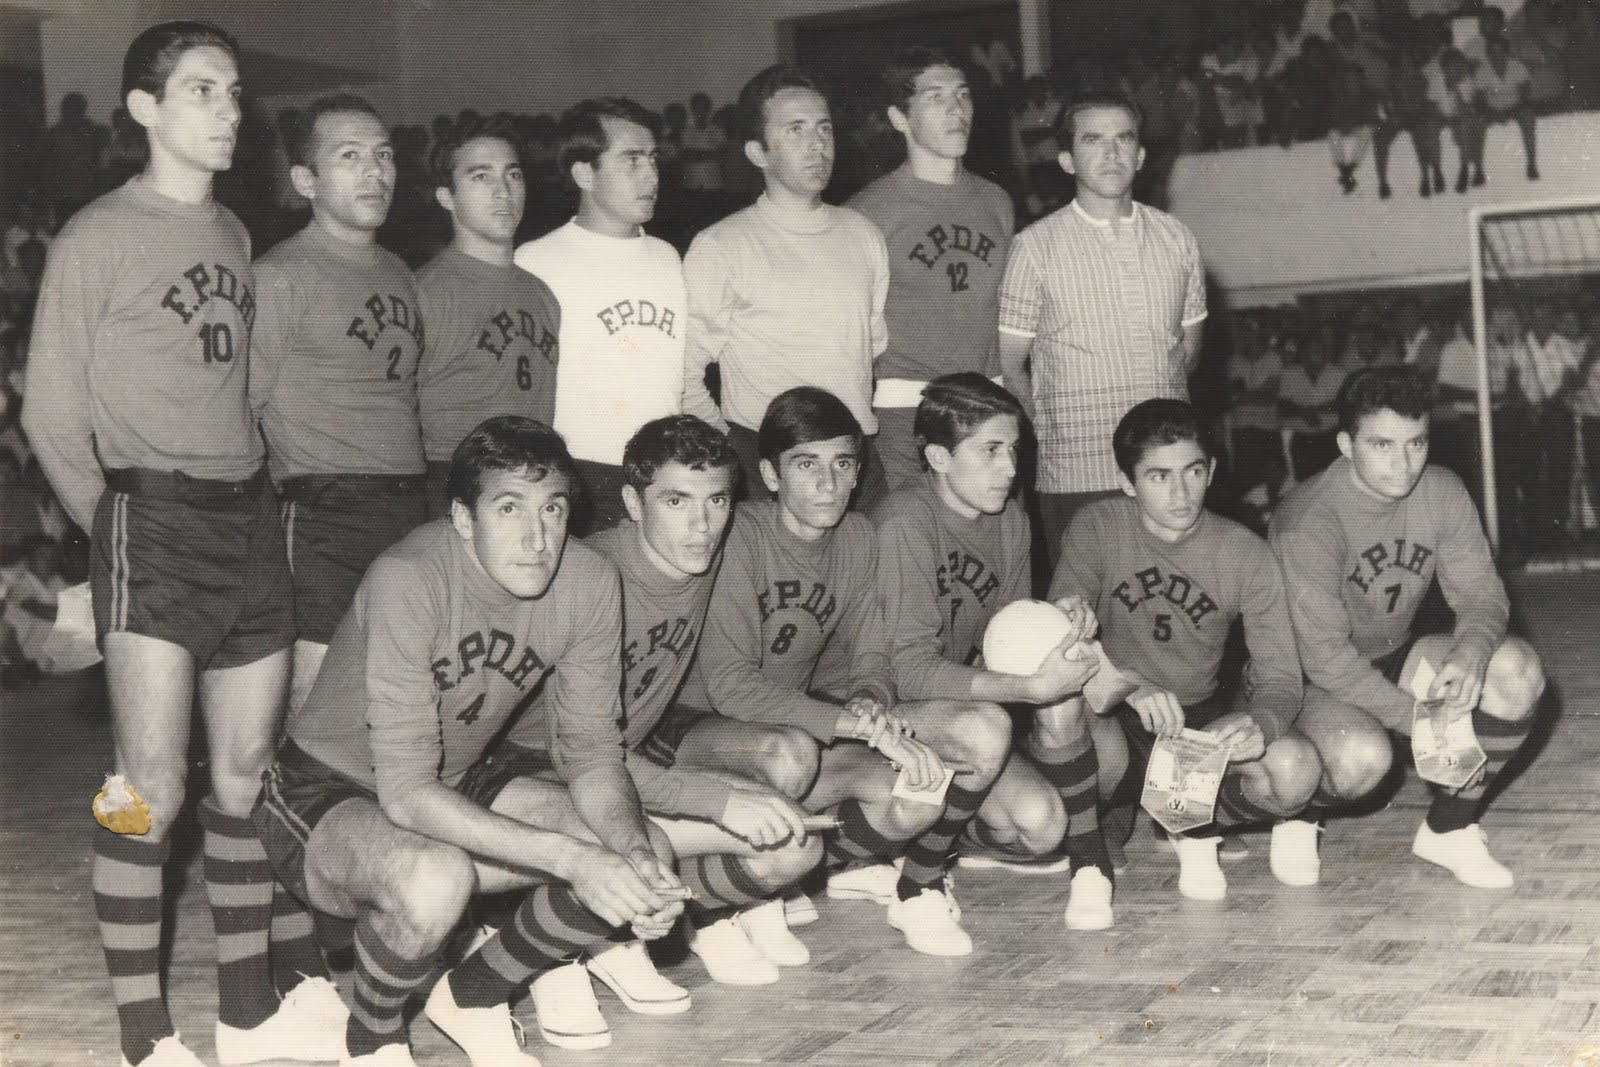 Retalhos Históricos de Campina Grande: A História do Futebol de Salão em  Campina Grande (2ª Parte)